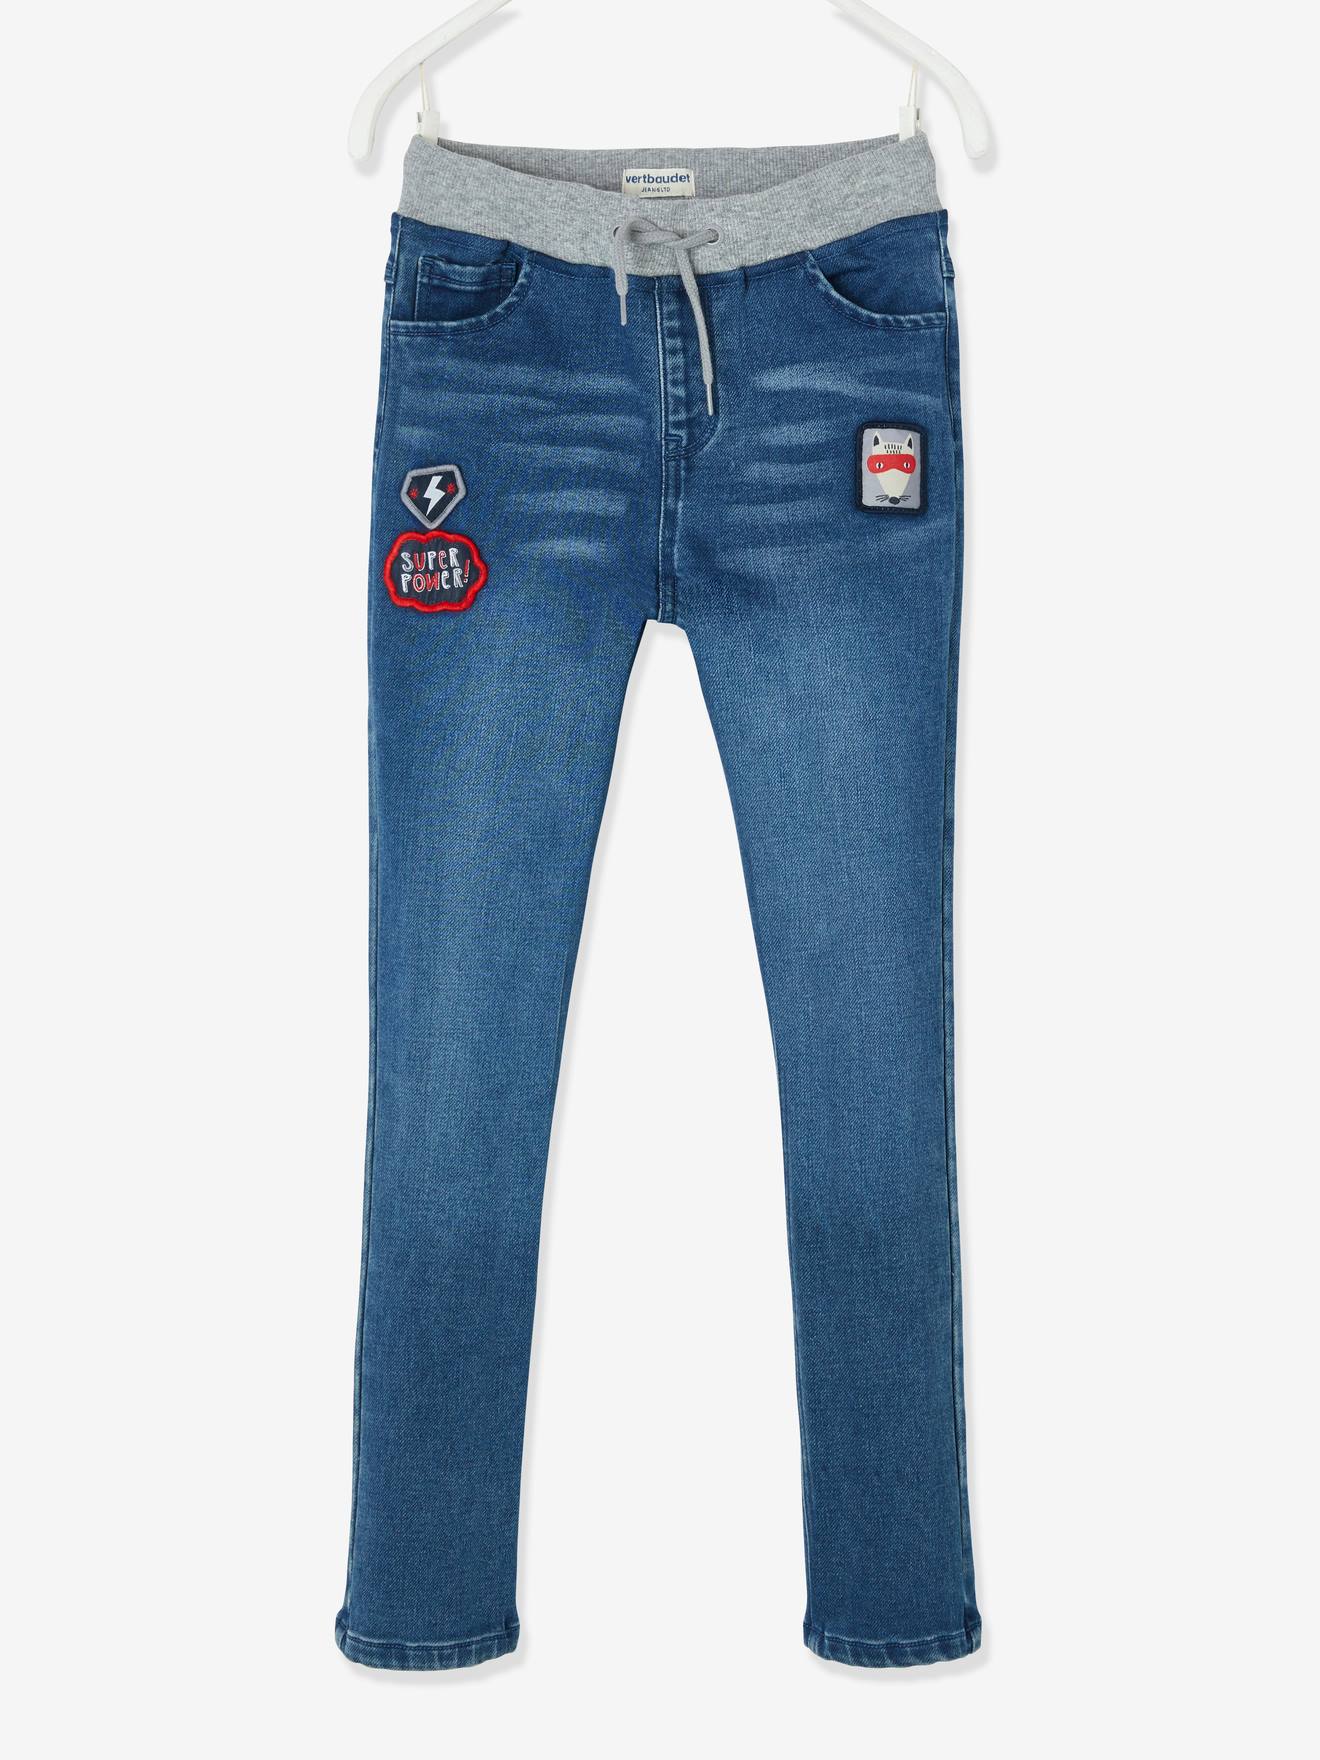 fancy jeans for boys